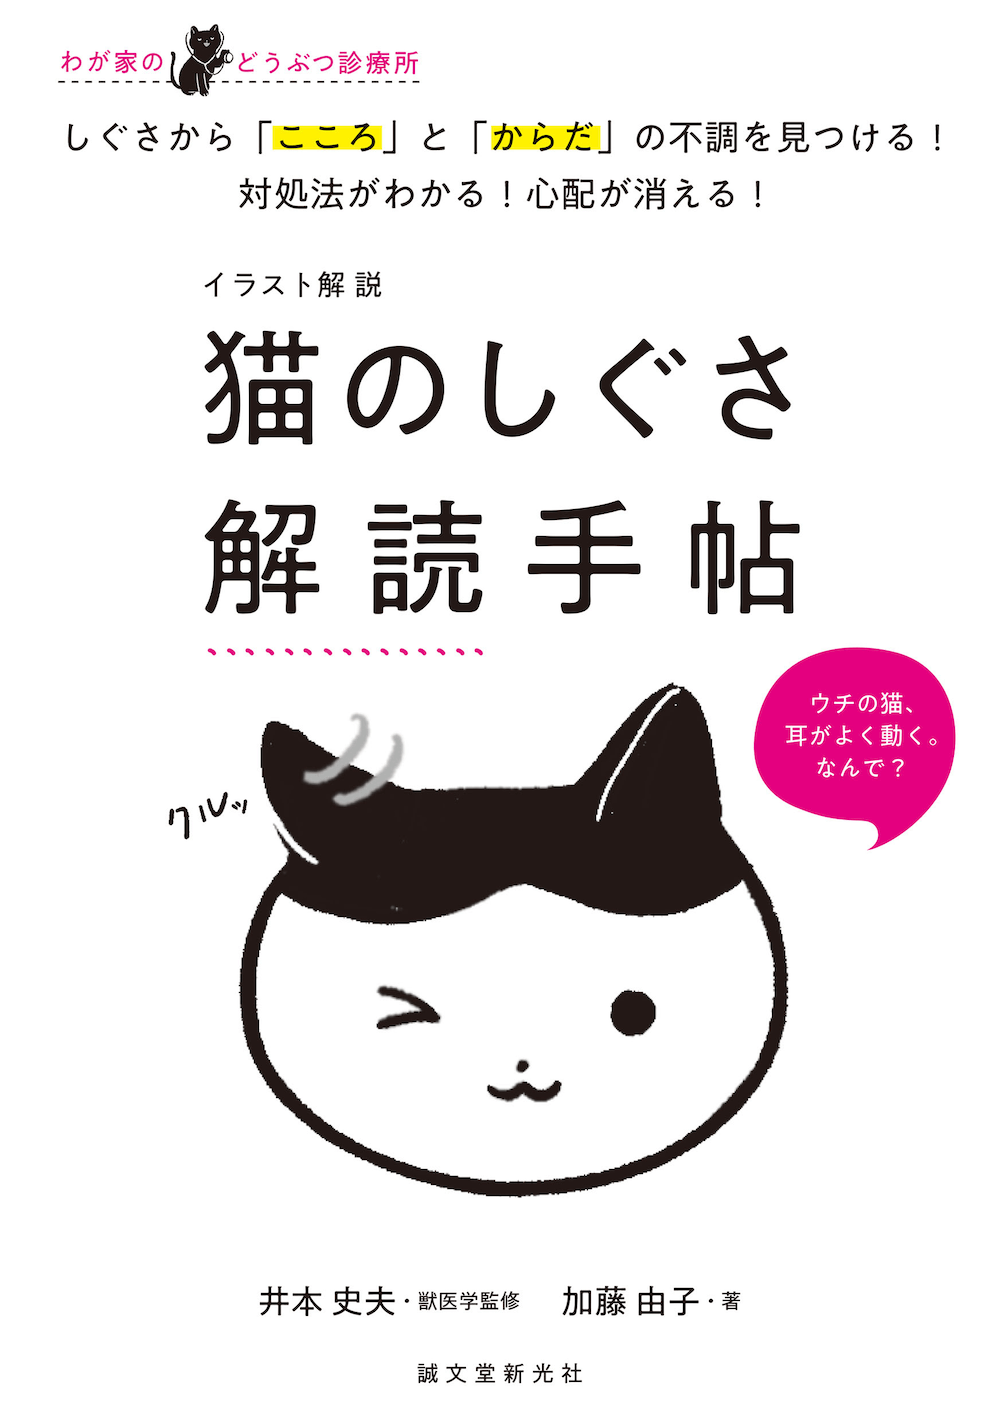 猫の仕草を解説した本『イラスト解説 猫のしぐさ解読手帖』表紙イメージ